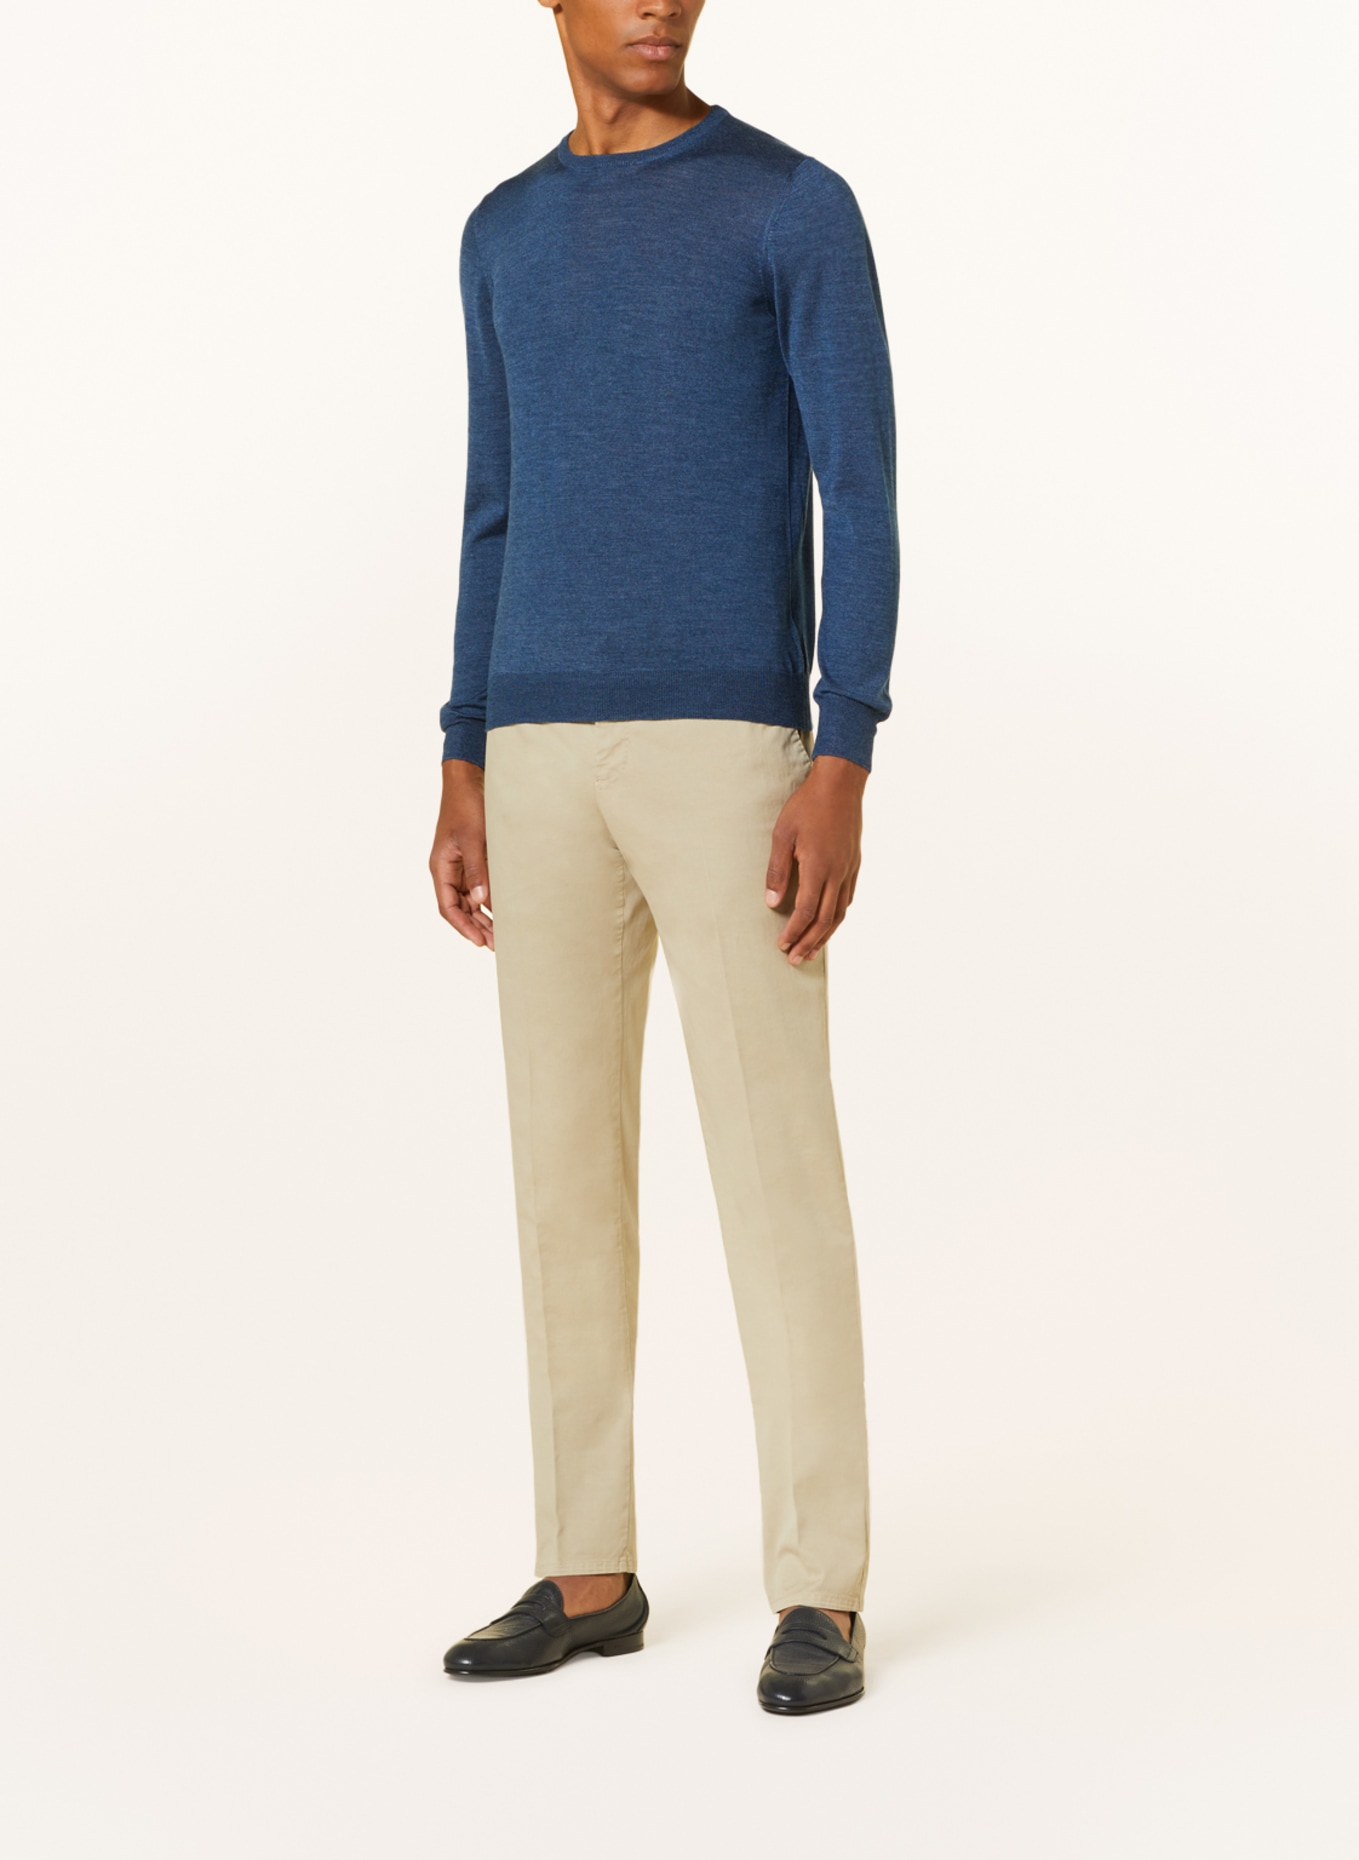 GRAN SASSO Pullover mit Seide, Farbe: BLAU (Bild 2)